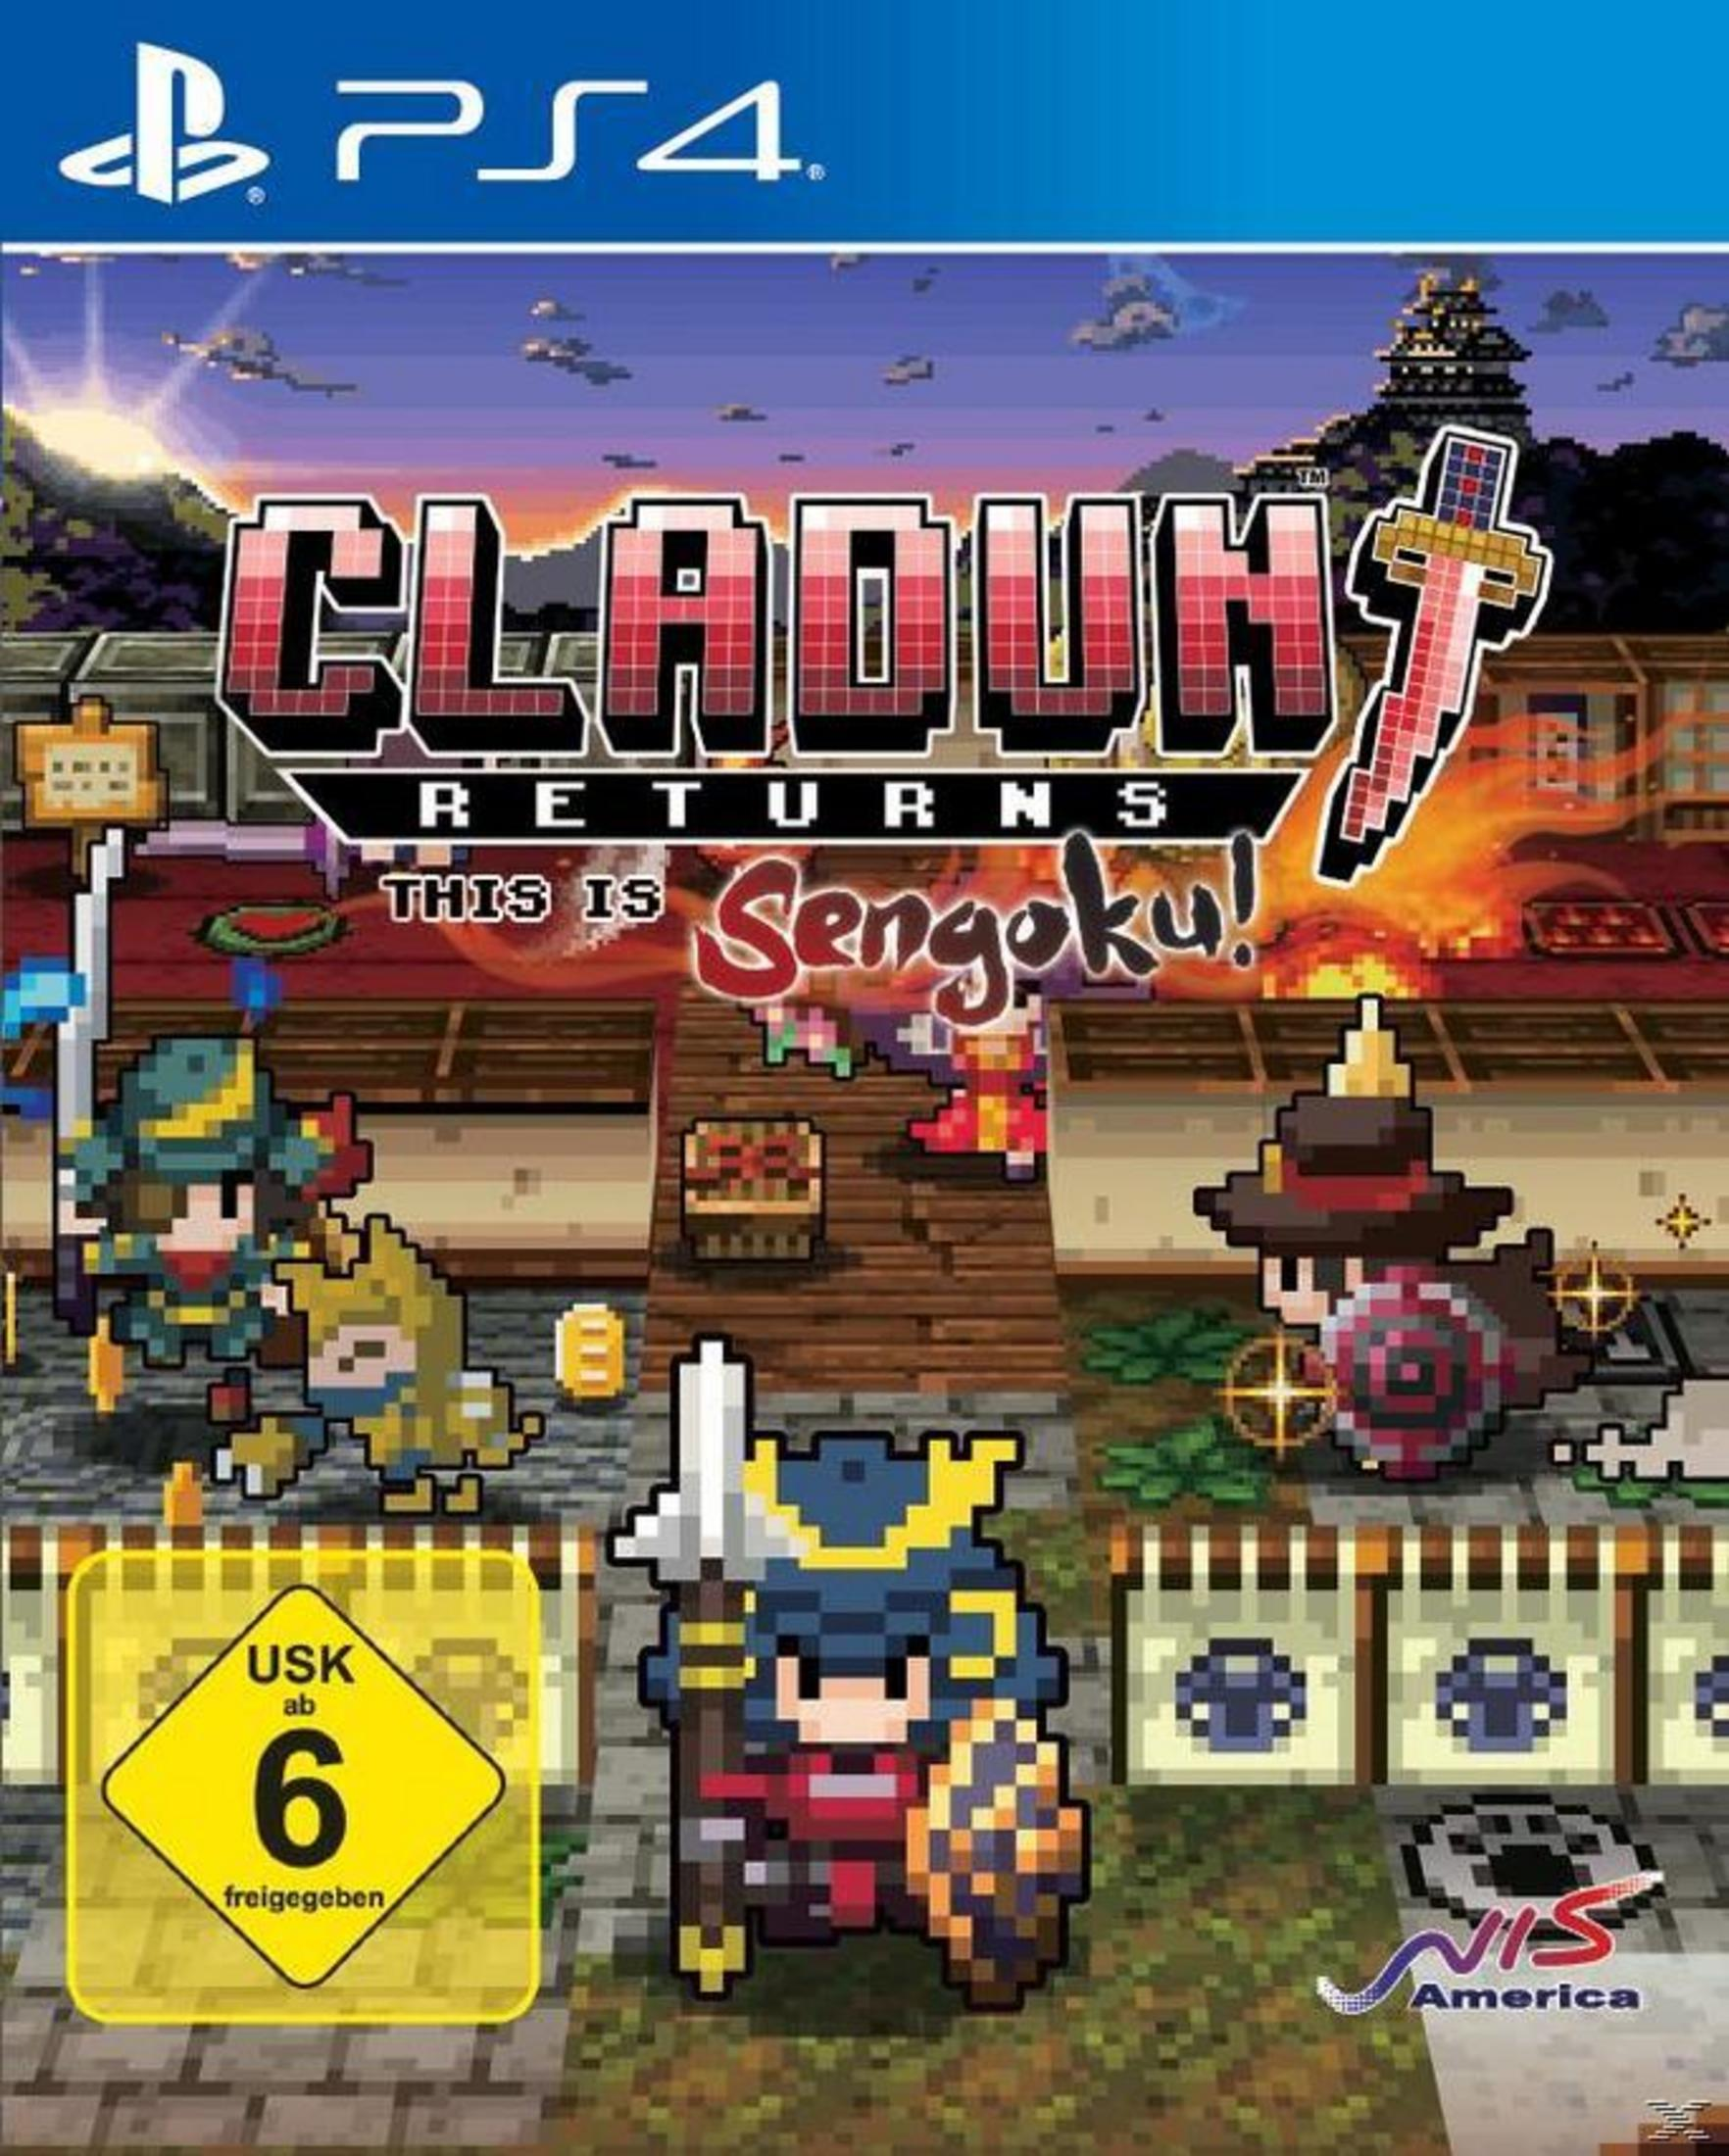 This 4] [PlayStation is Returns: Cladun - Sengoku